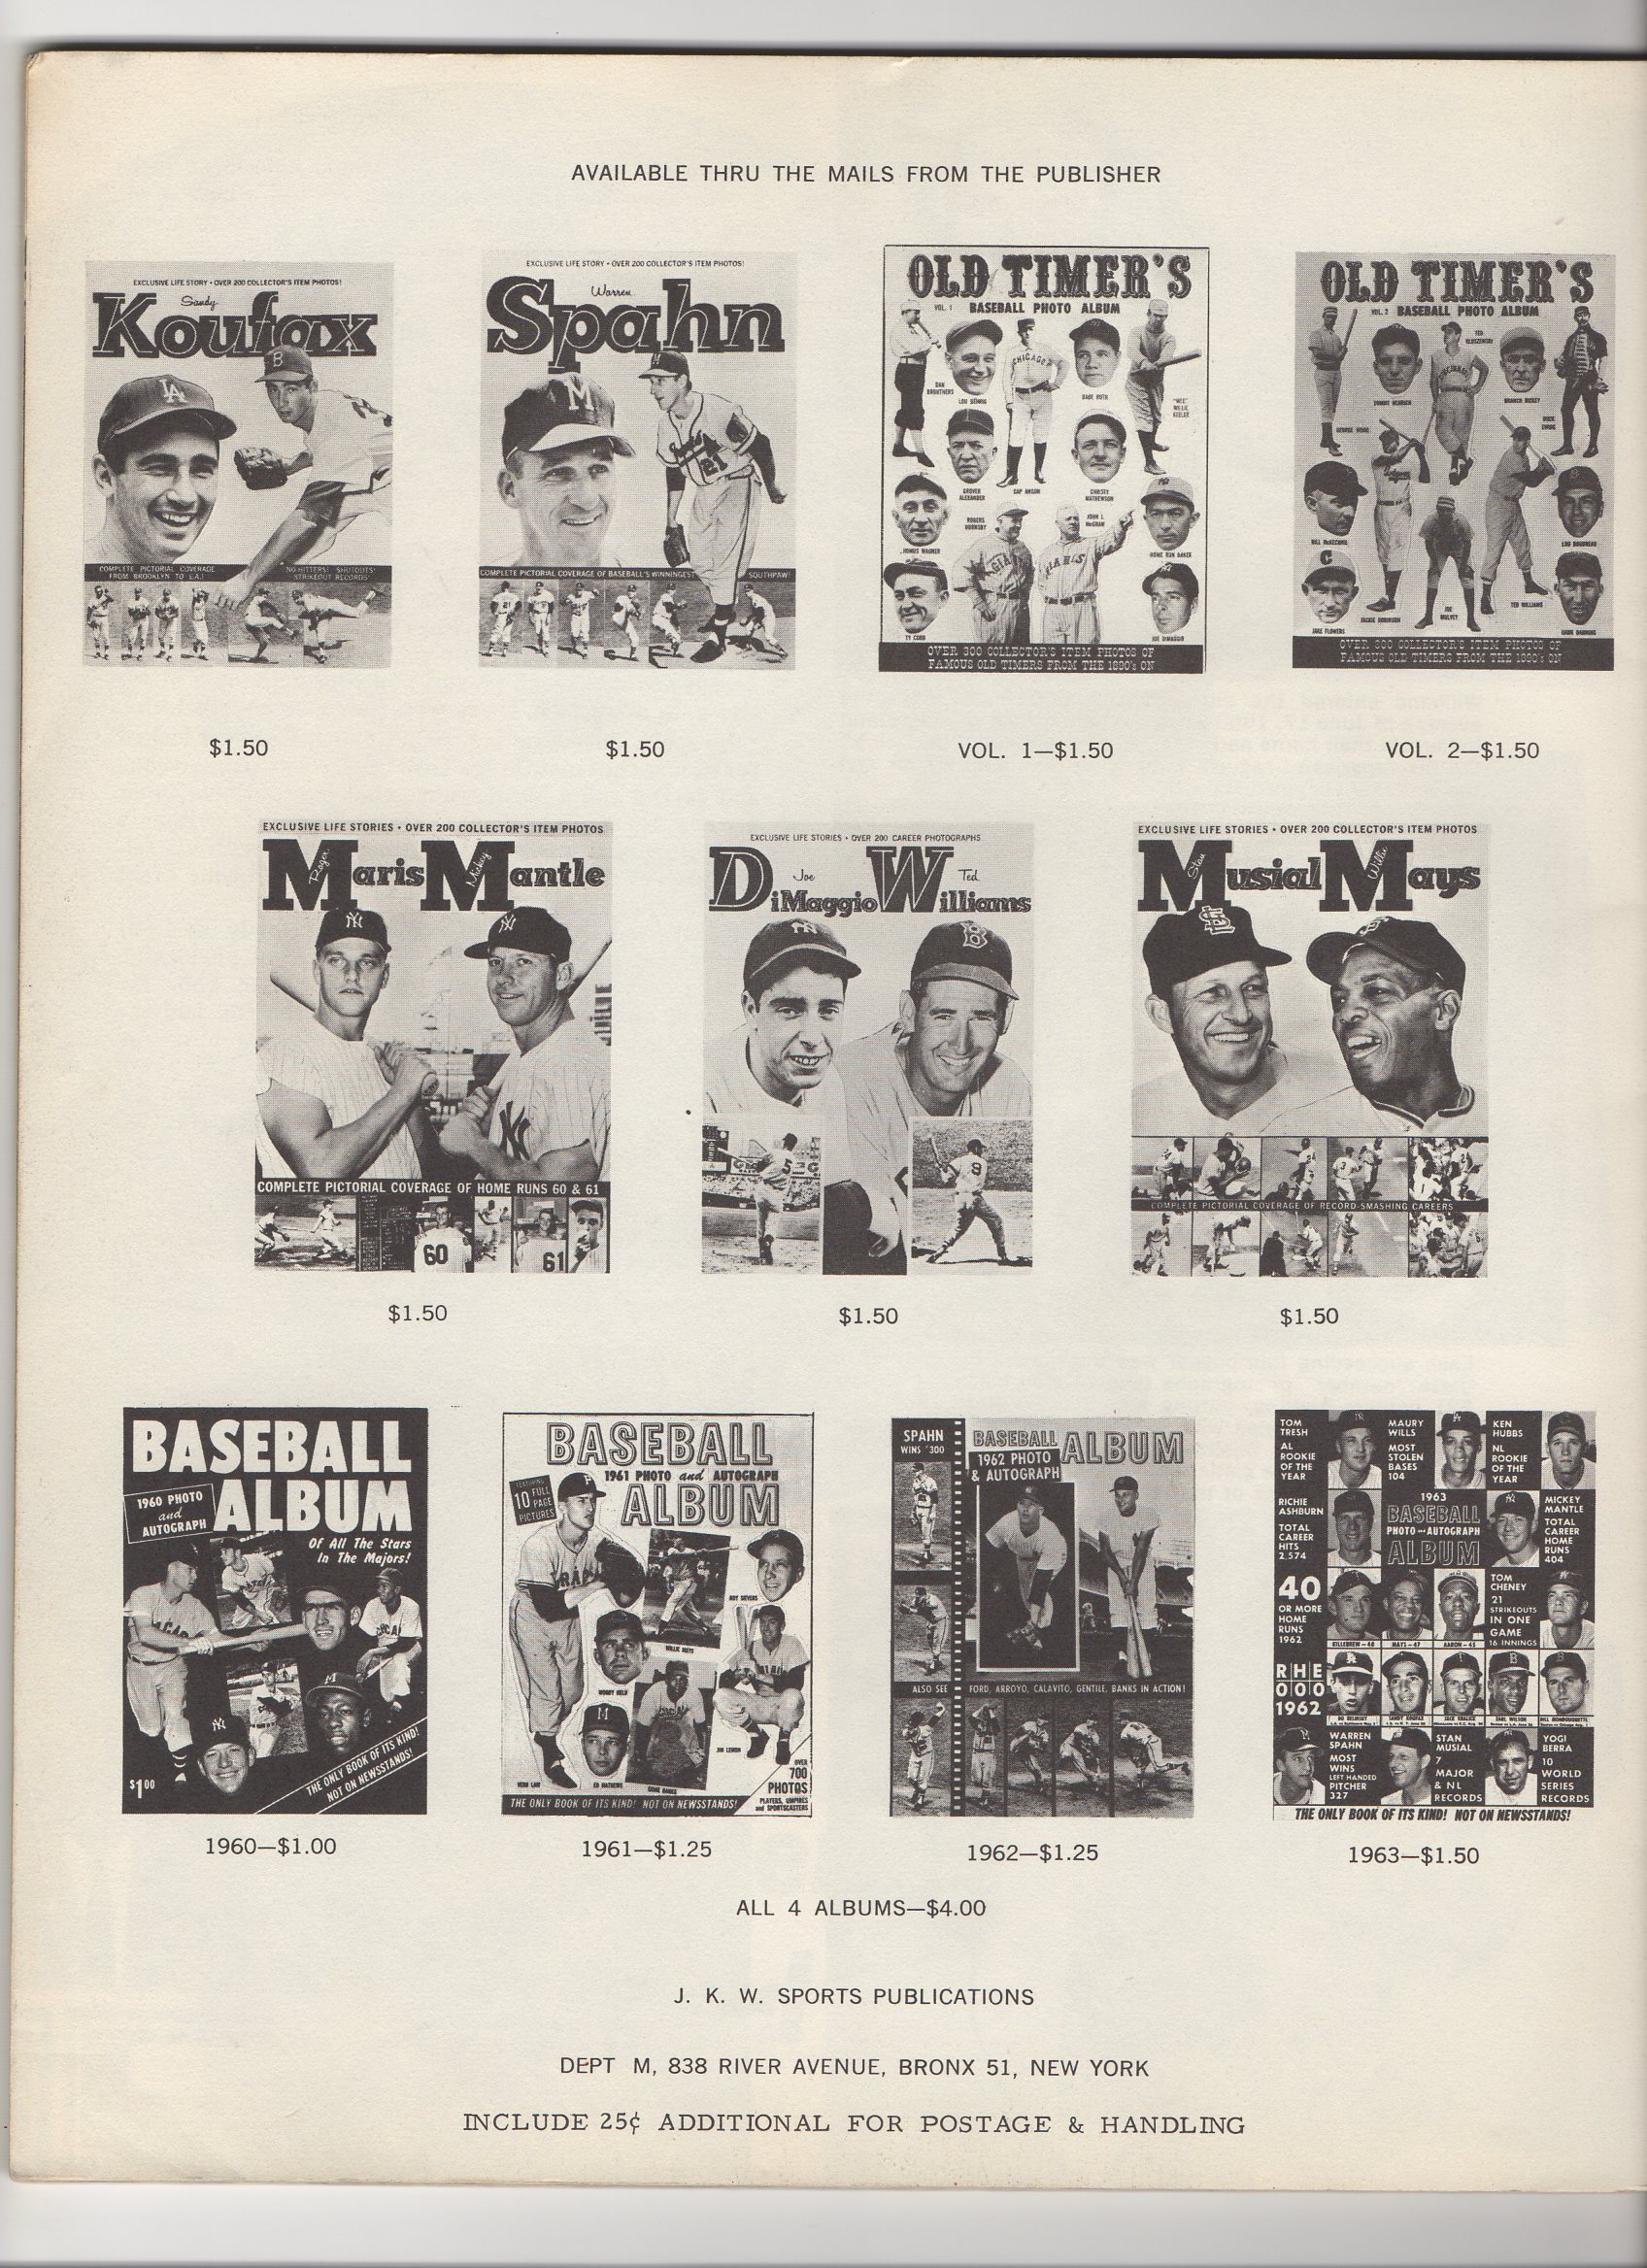 1964 JKW publications